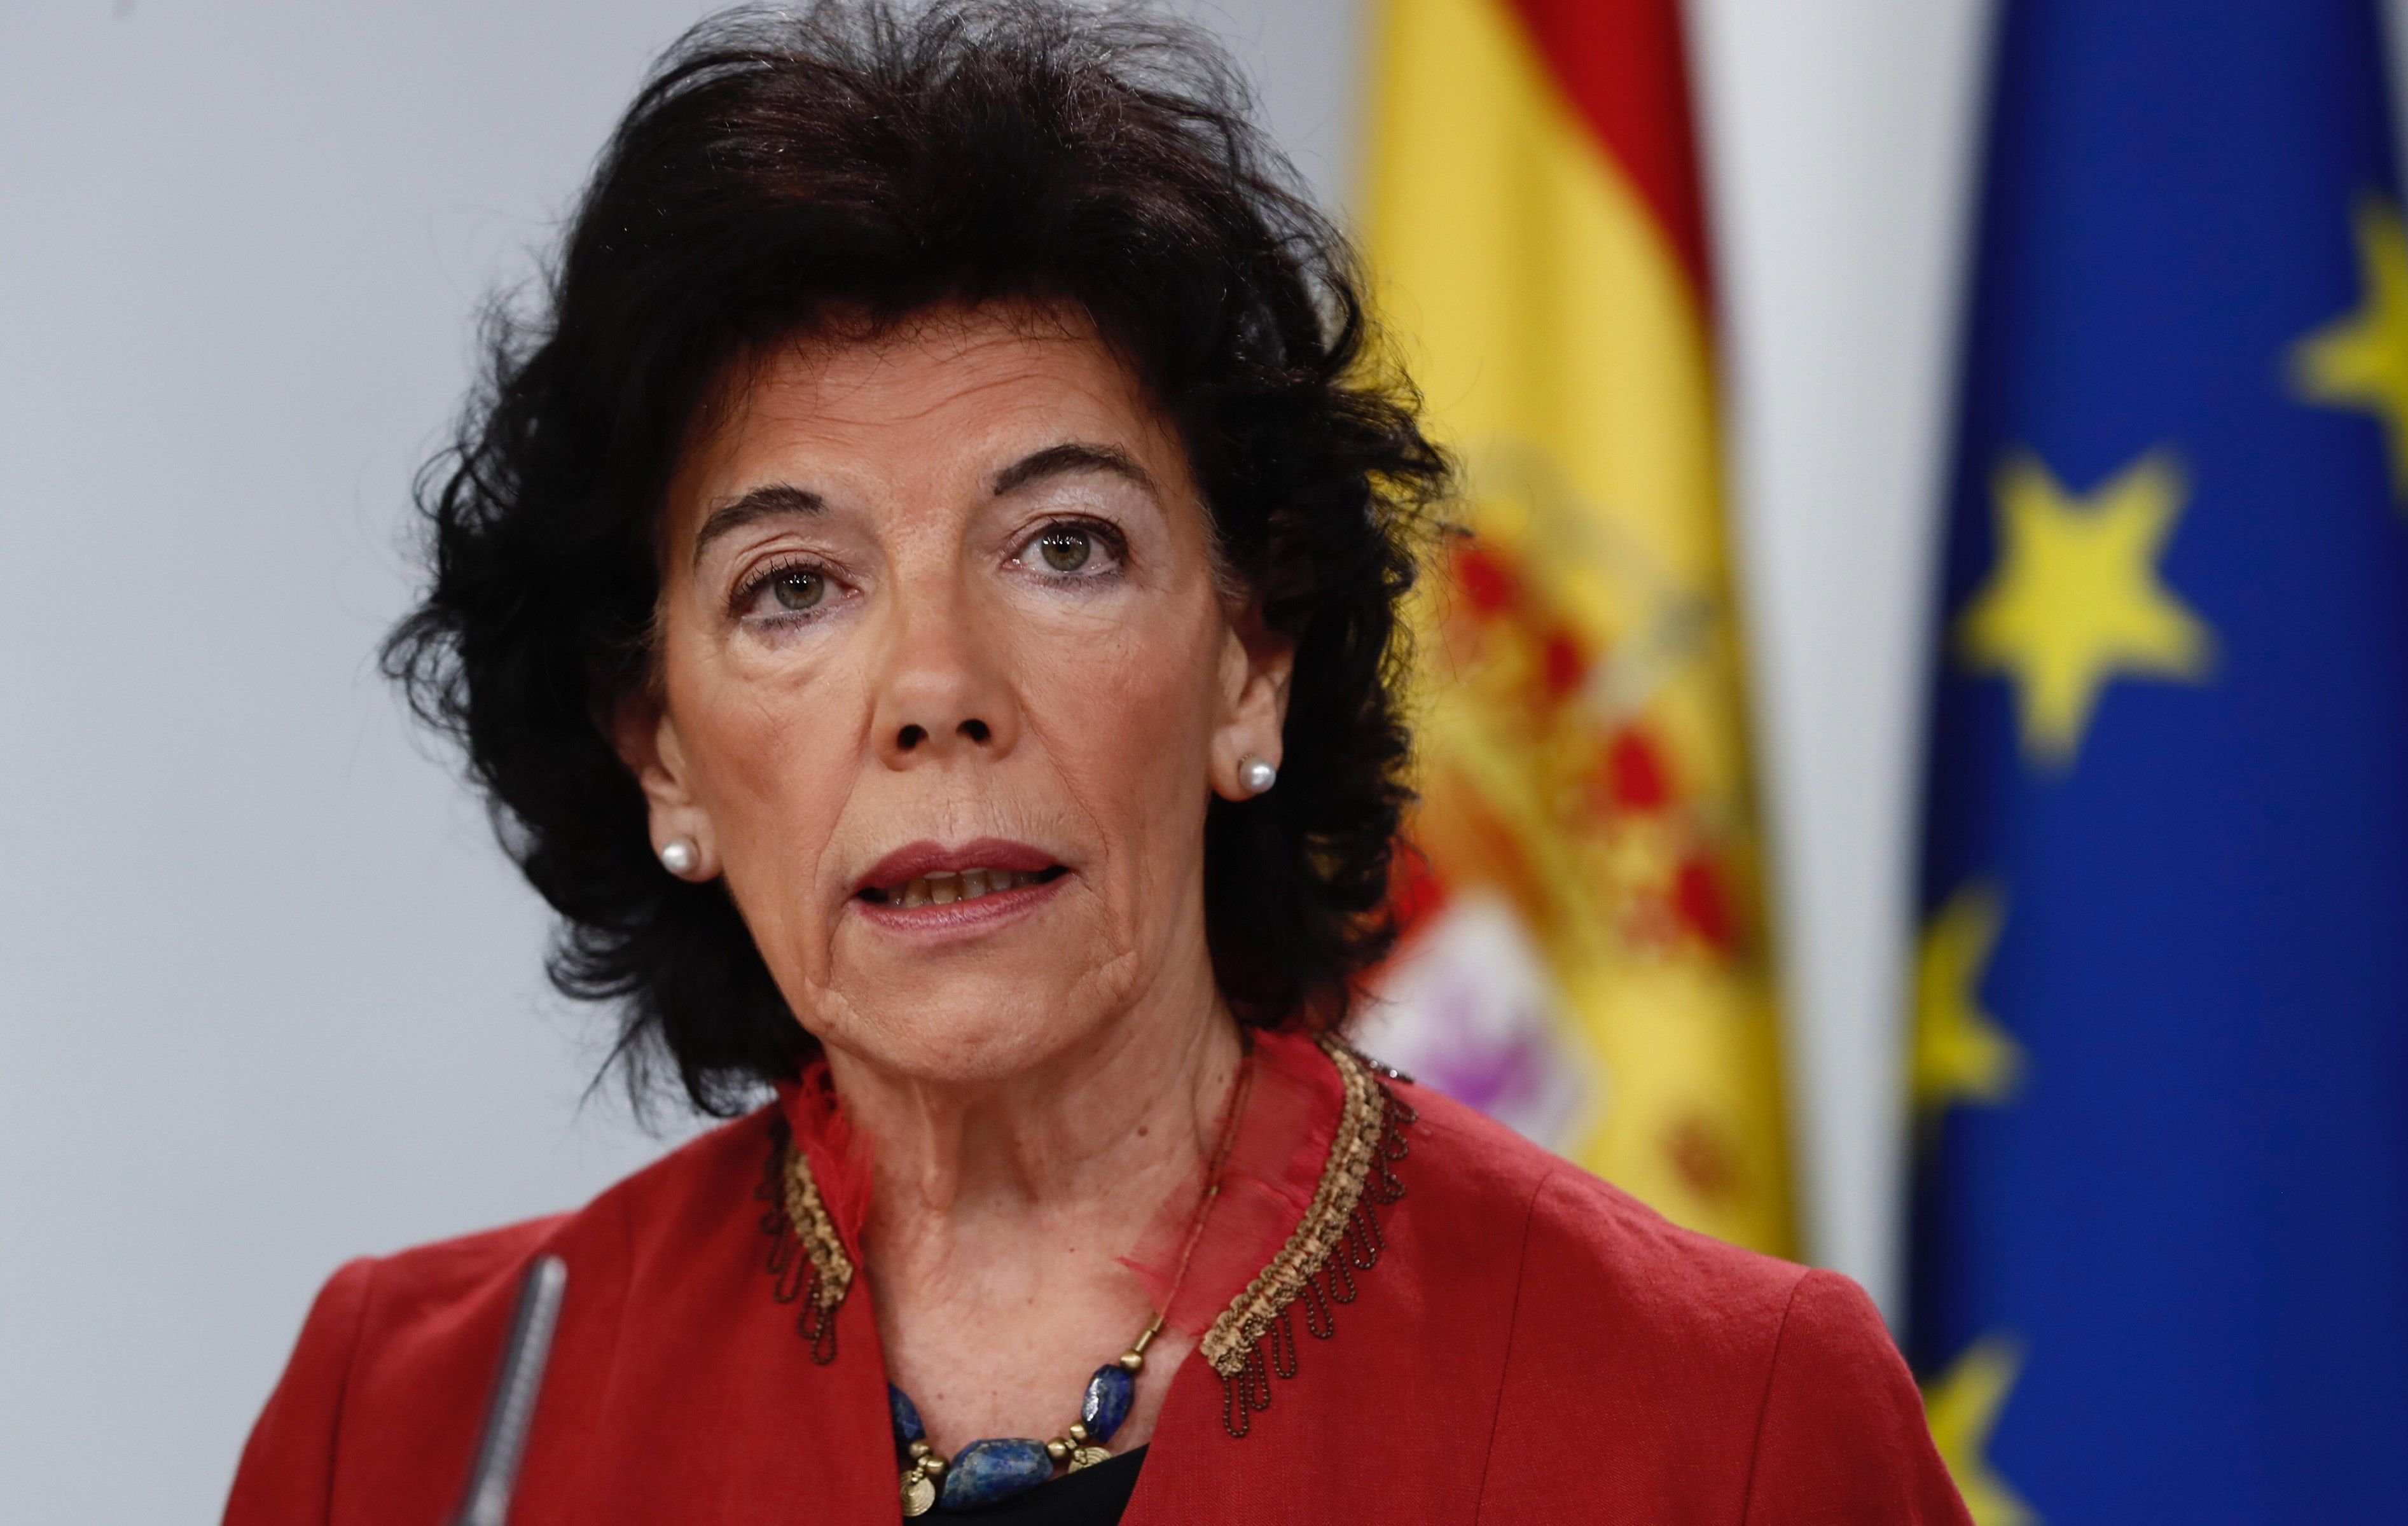 El gobierno español, después de publicar la tesis de Sánchez: "Toca pedirle perdón"